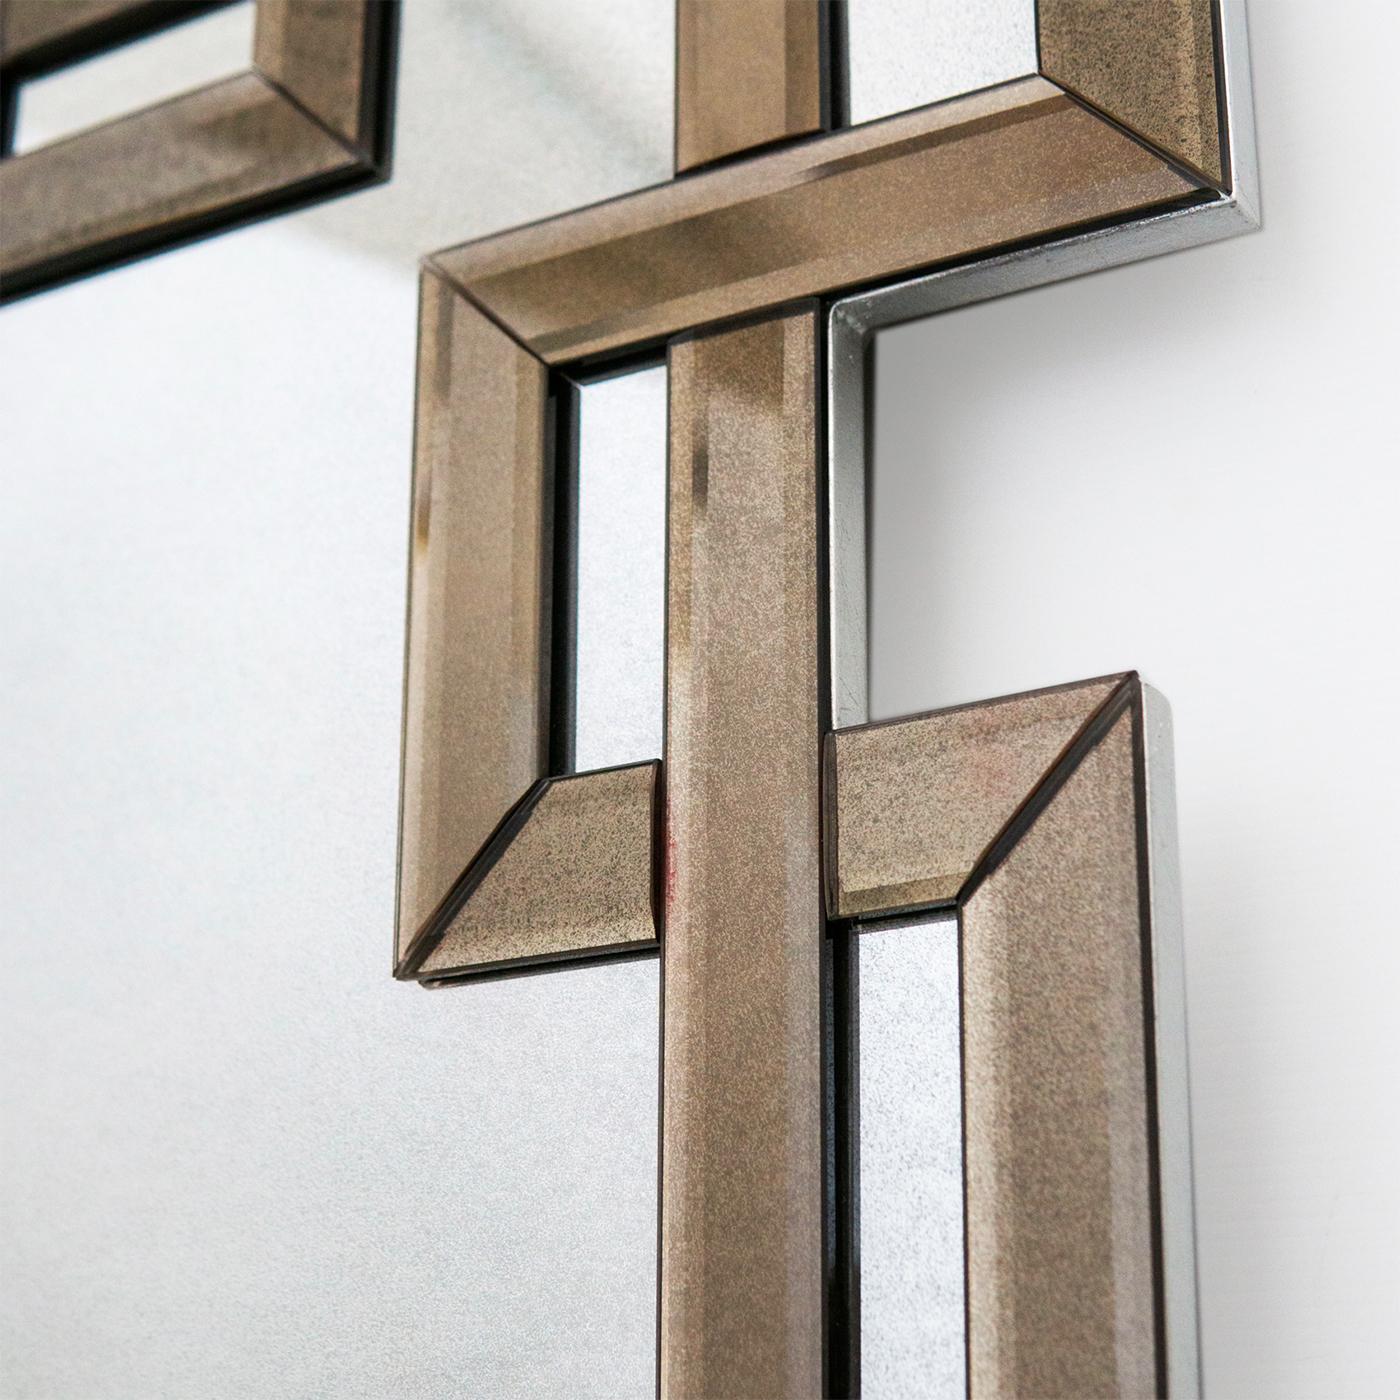 Le miroir Greca de style Art Déco fait partie de la Collection Notre Dame. Structure en bois avec des bords argentés. La partie centrale est en verre avec une finition miroir moyennement antique. Cadre en verre biseauté de couleur bronze avec